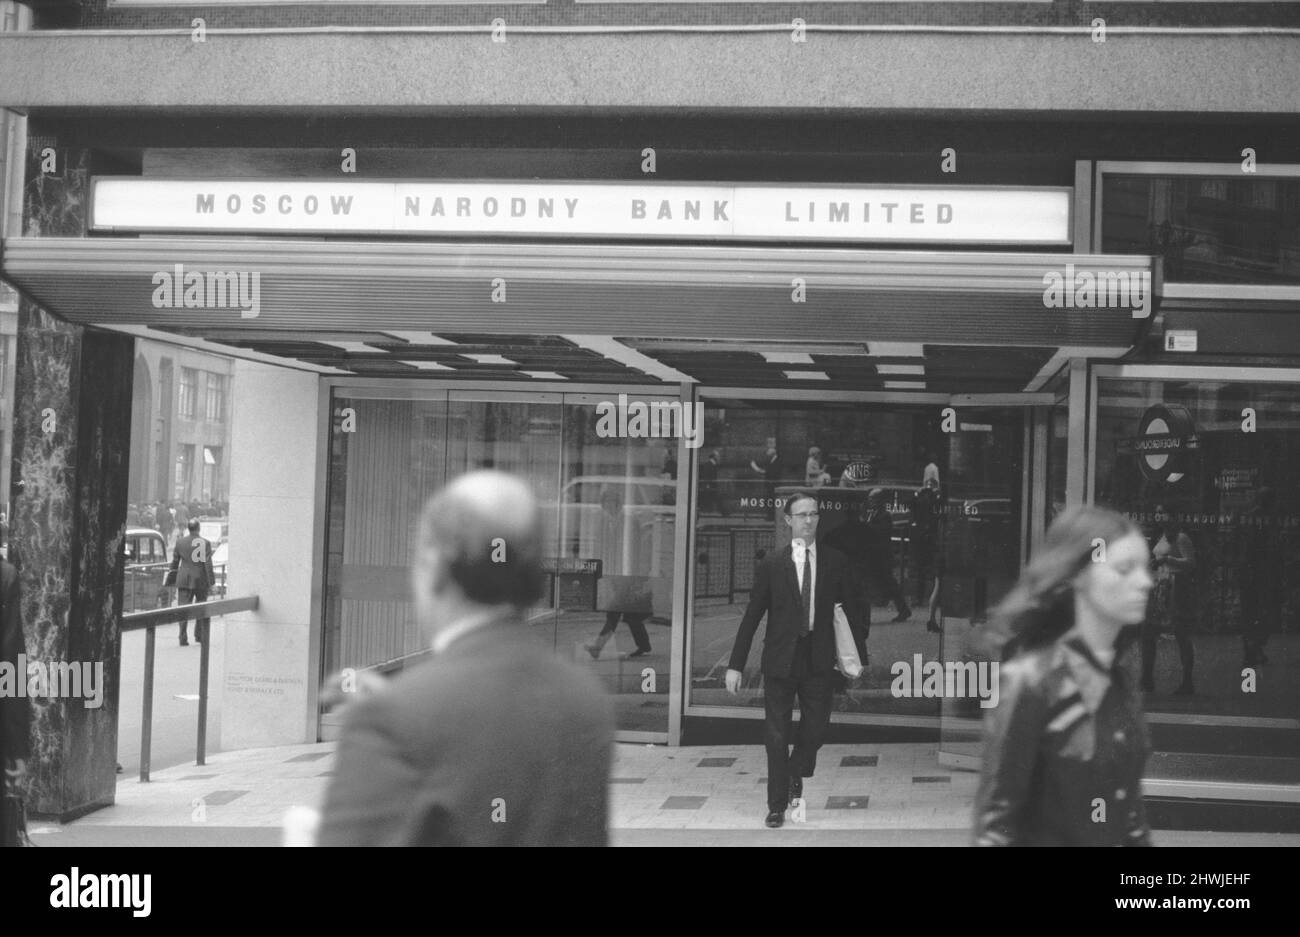 Außenansicht der Moskauer Narodny Bank in London September 1971. Eine Reihe sowjetischer Bürger, die bei der Bank arbeiten, wurden gebeten, das Land zu verlassen (erklärte sie als „persona non grata“, als die neue Tory-Regierung unter Edward Heath beschloss, sich wegen der Bedenken hinsichtlich des Ausmaßes der sowjetischen Geheimdienstaktivitäten in Großbritannien hart zu machen. Insgesamt wurden im Jahr 1971 105 sowjetische Bürger ausgewiesen, die bekannt oder verdächtigt wurden, an Geheimdienstaktivitäten beteiligt zu sein. Stockfoto